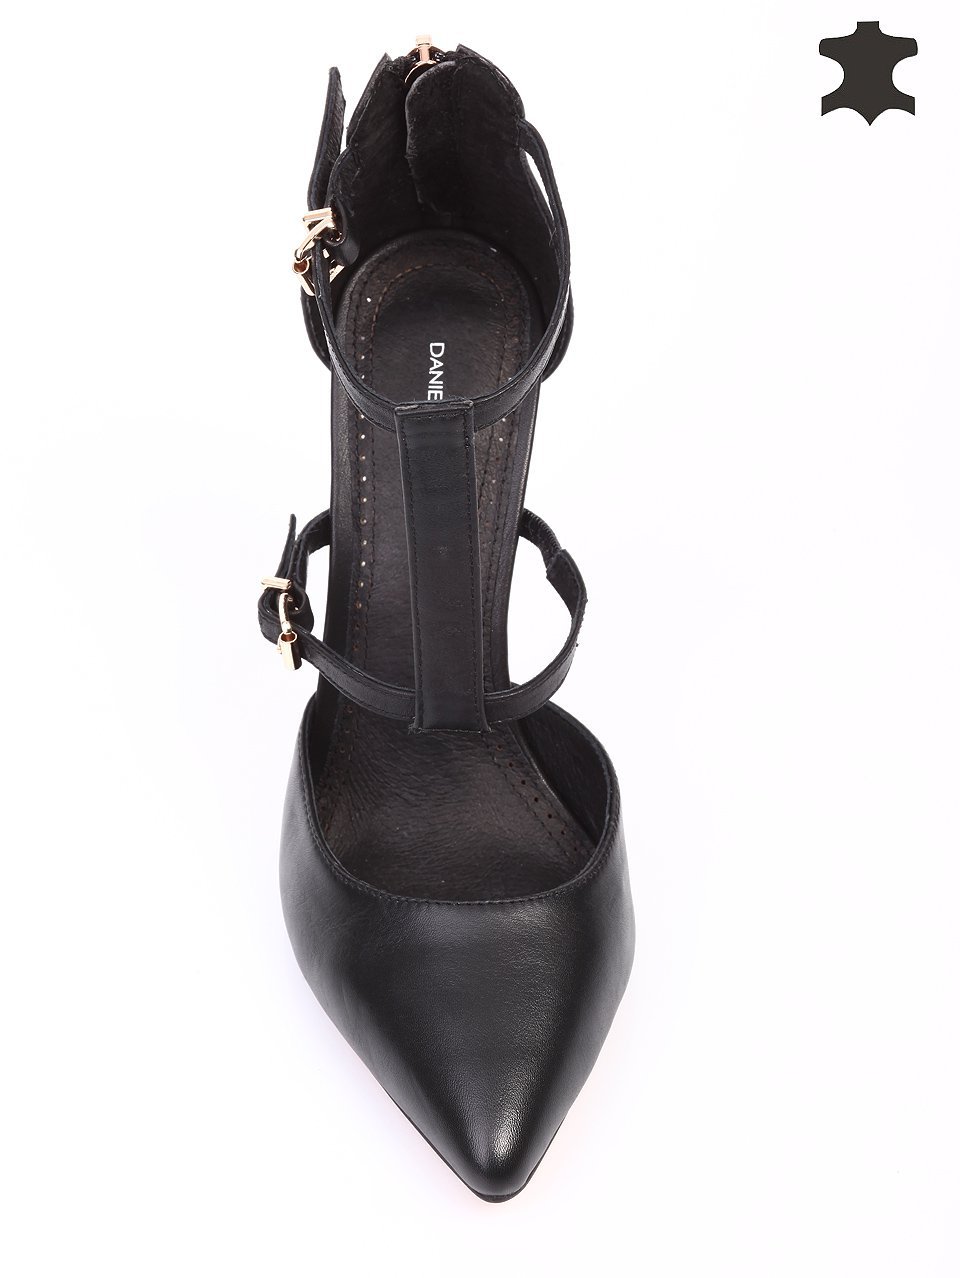 Дамски обувки от естествена кожа на ток 3I-16242 black